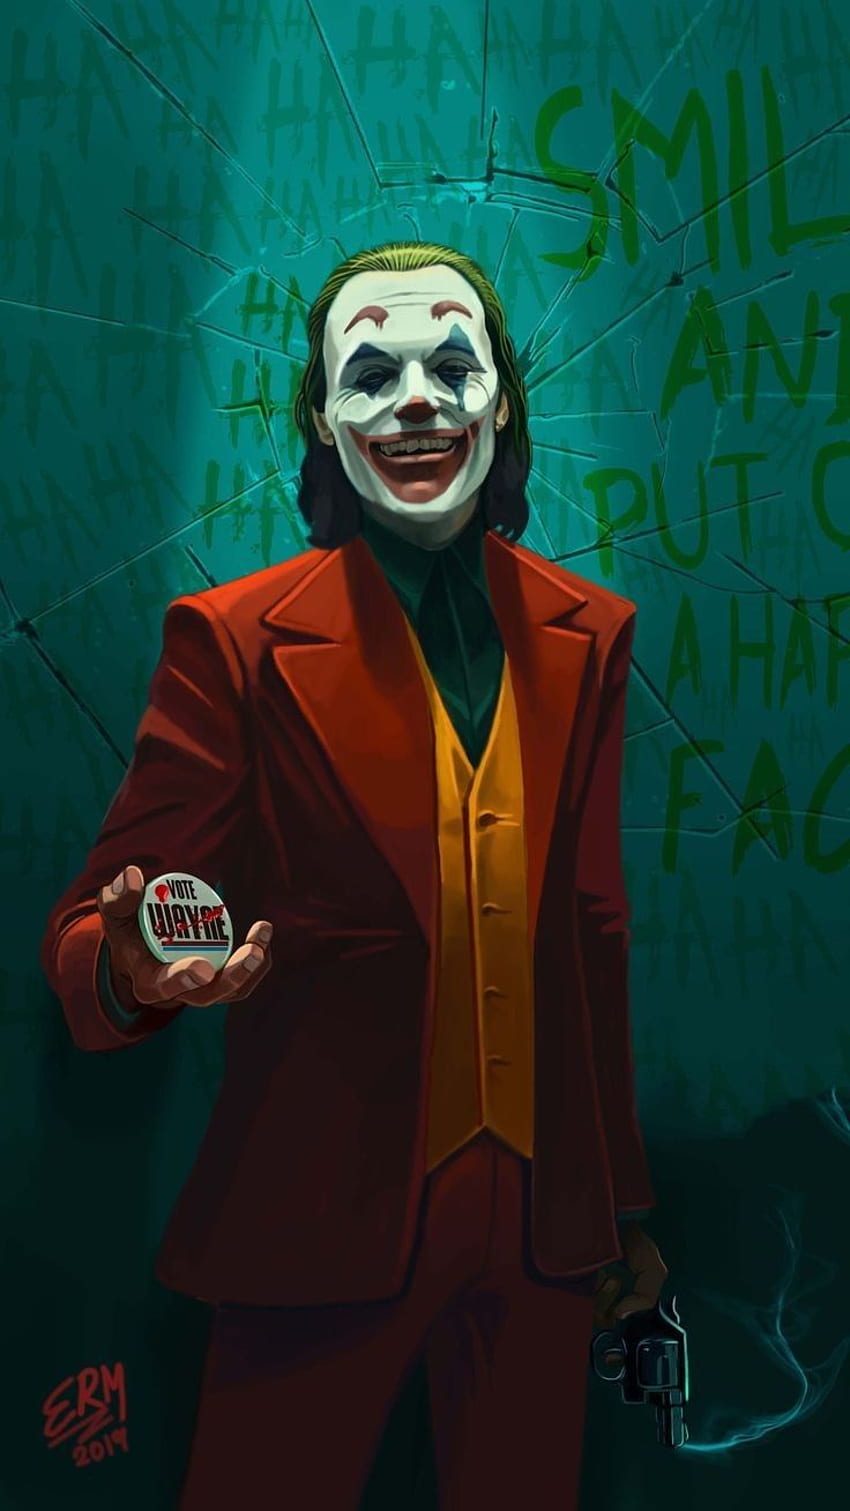 Shiny Happy People di The Joker Art pada tahun 2020. Joker Batman, Gotham Joker wallpaper ponsel HD